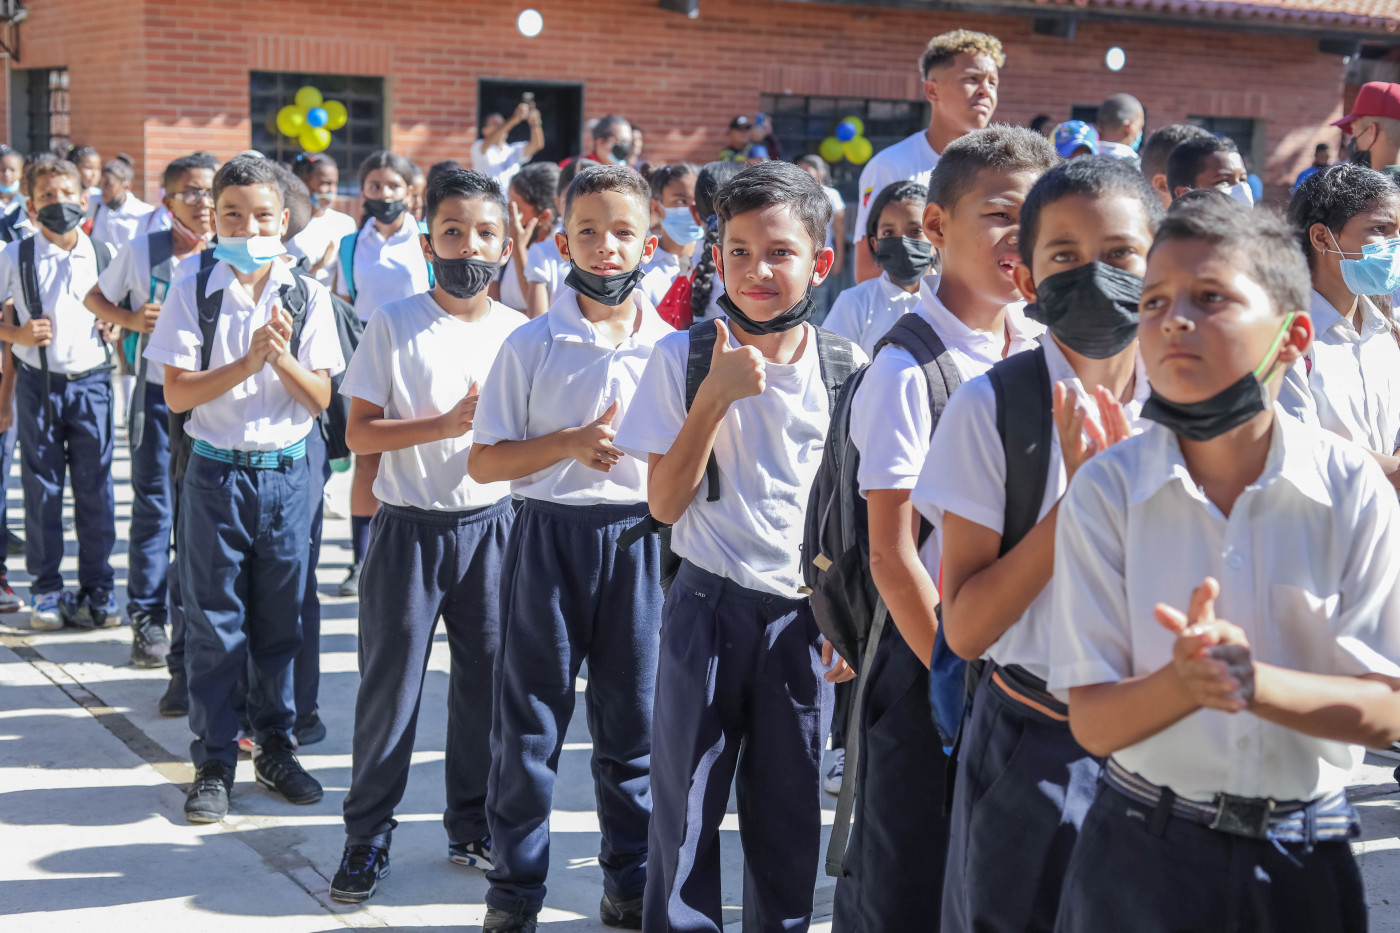 “Los estudiantes venezolanos vuelven al encuentro del conocimiento con alegría y esperanza”